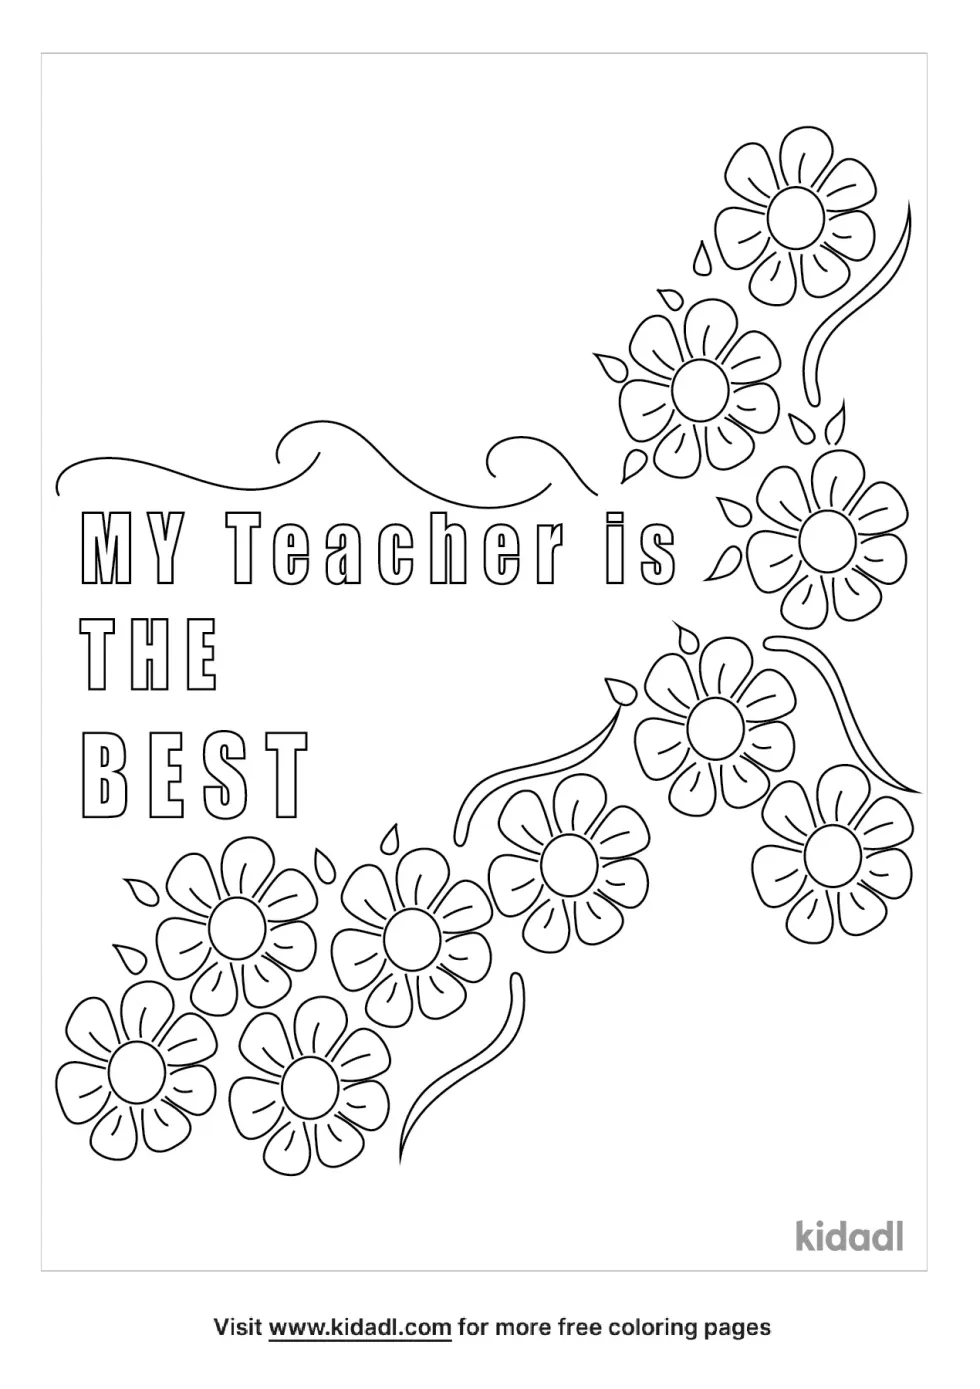 World's Best Teacher